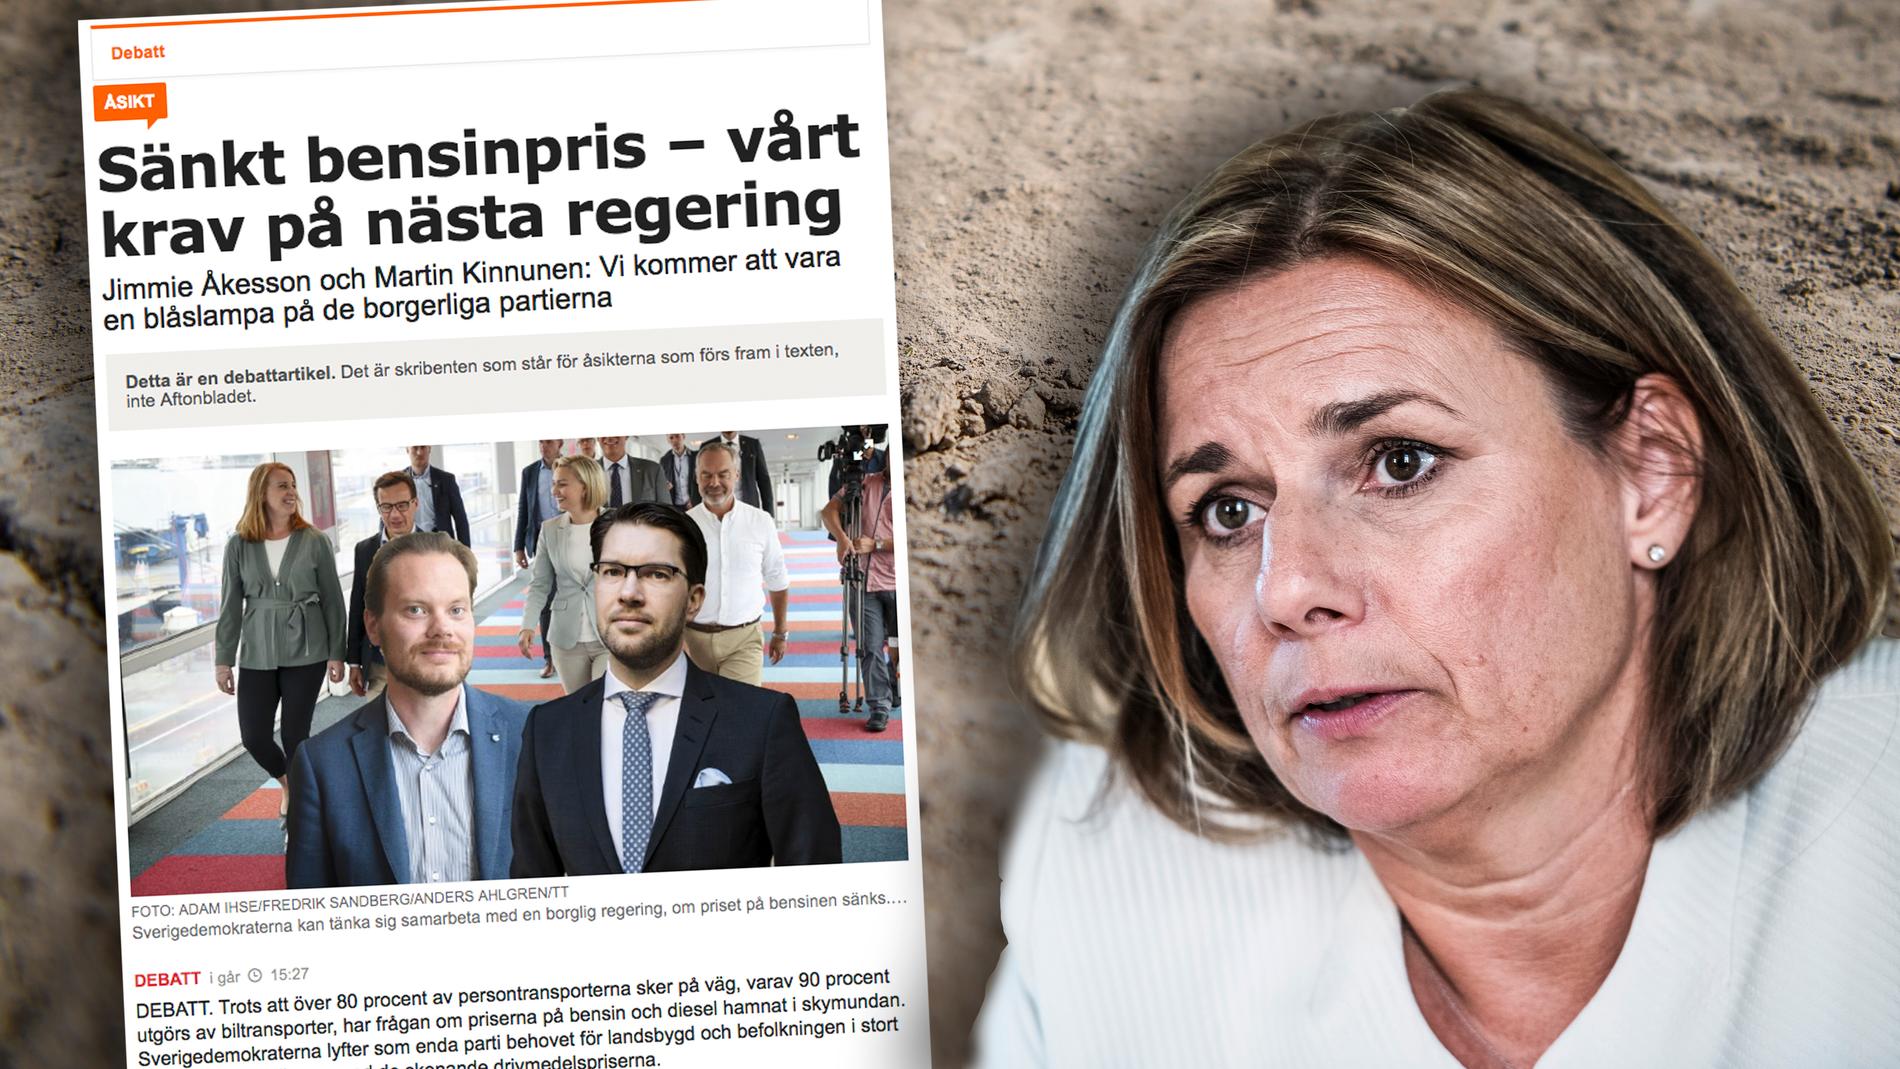  Den som lägger sin röst på Sverigedemokraterna lägger sin röst på mer extremväder, torka, skyfall, översvämningar, värmeböljor, hunger och flyktingströmmar, skriver Isabella Lövin